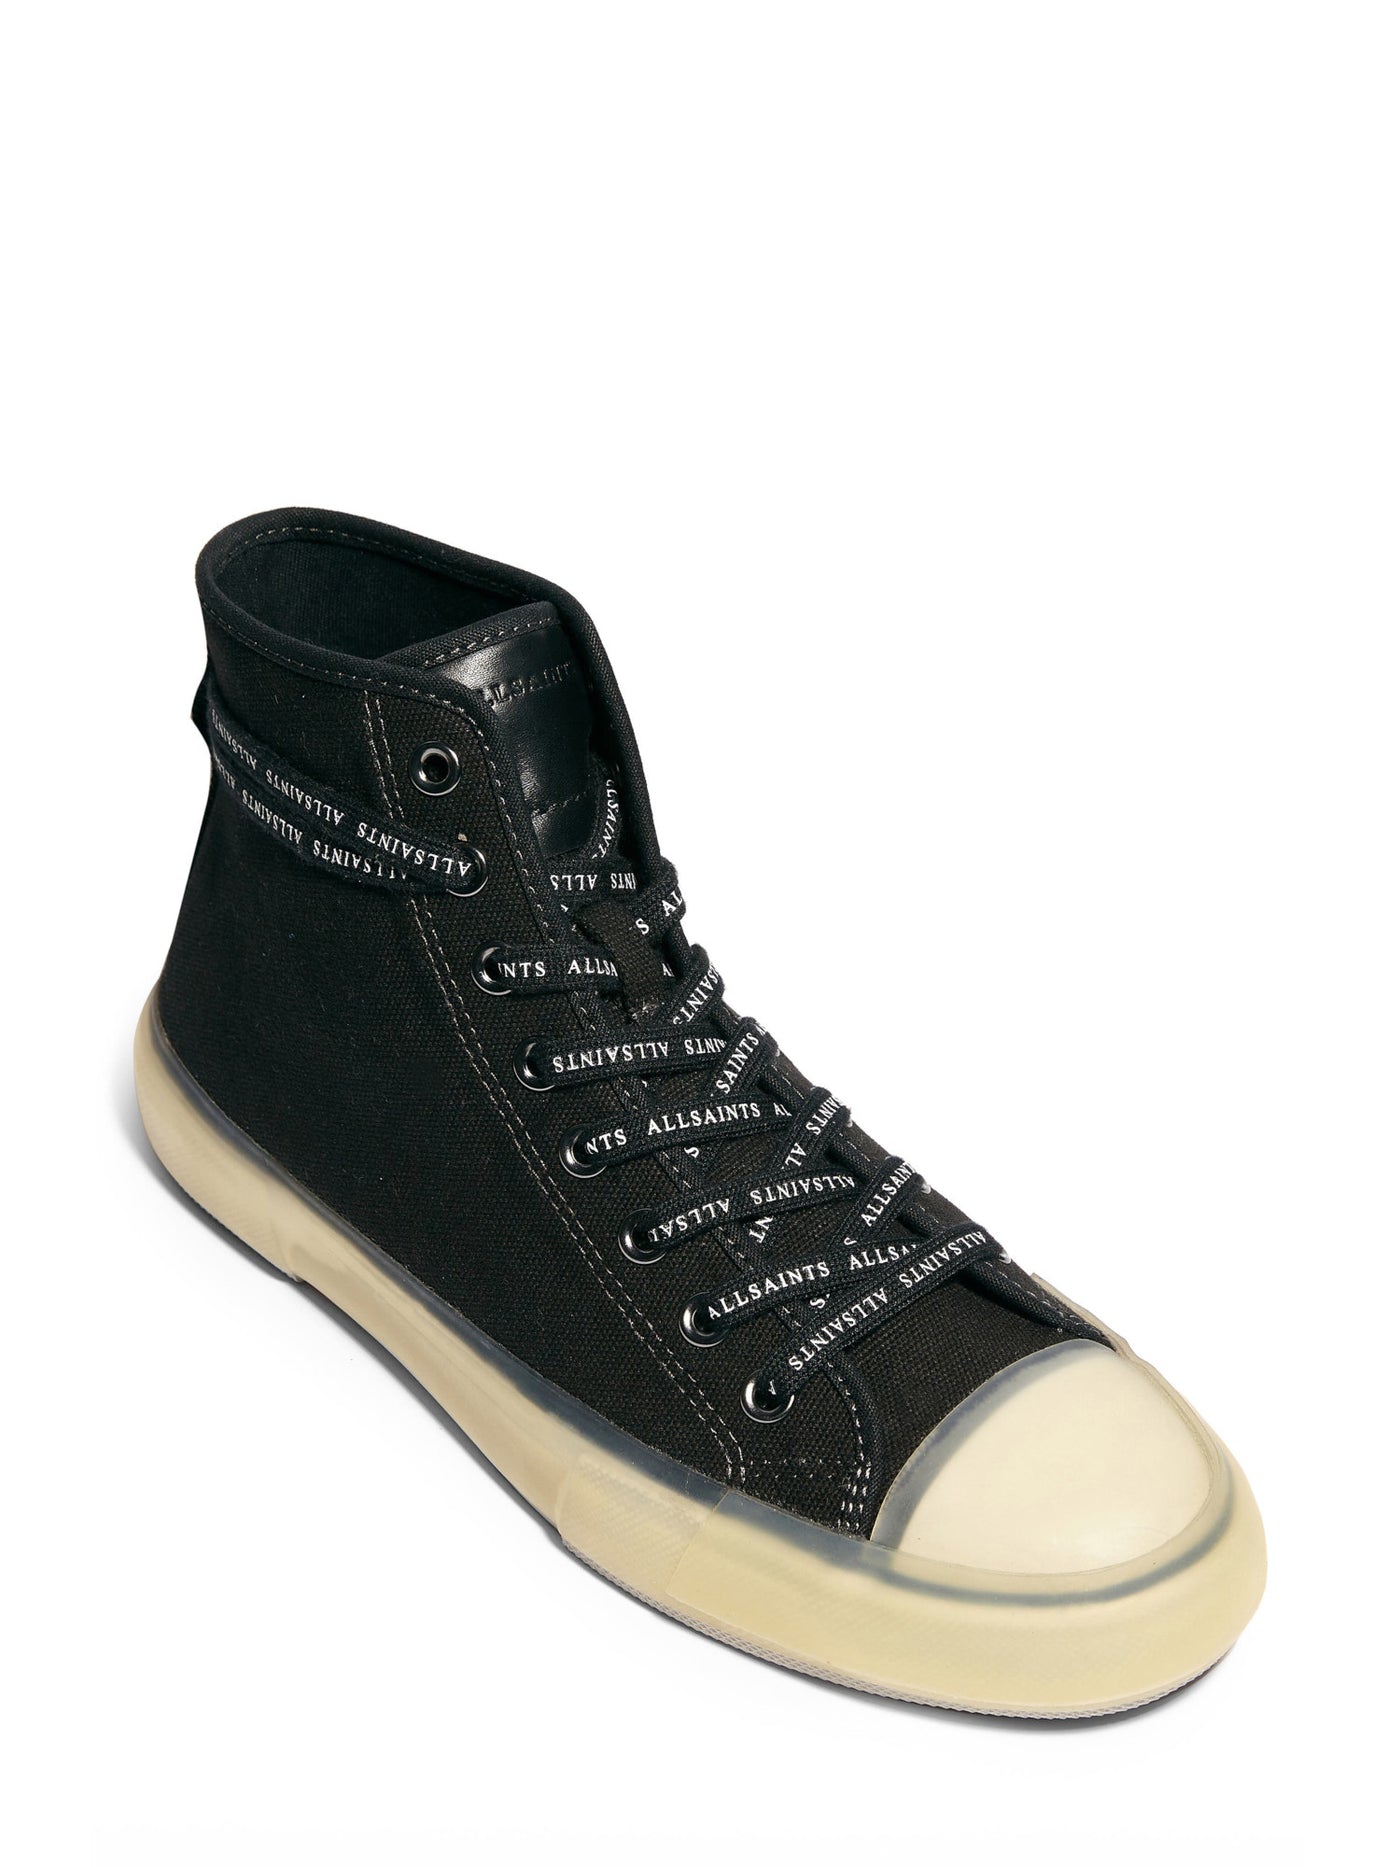 ALLSAINTS Mens Black Comfort Jaxon Round Toe Platform Lace-Up Athletic Sneakers Shoes 13